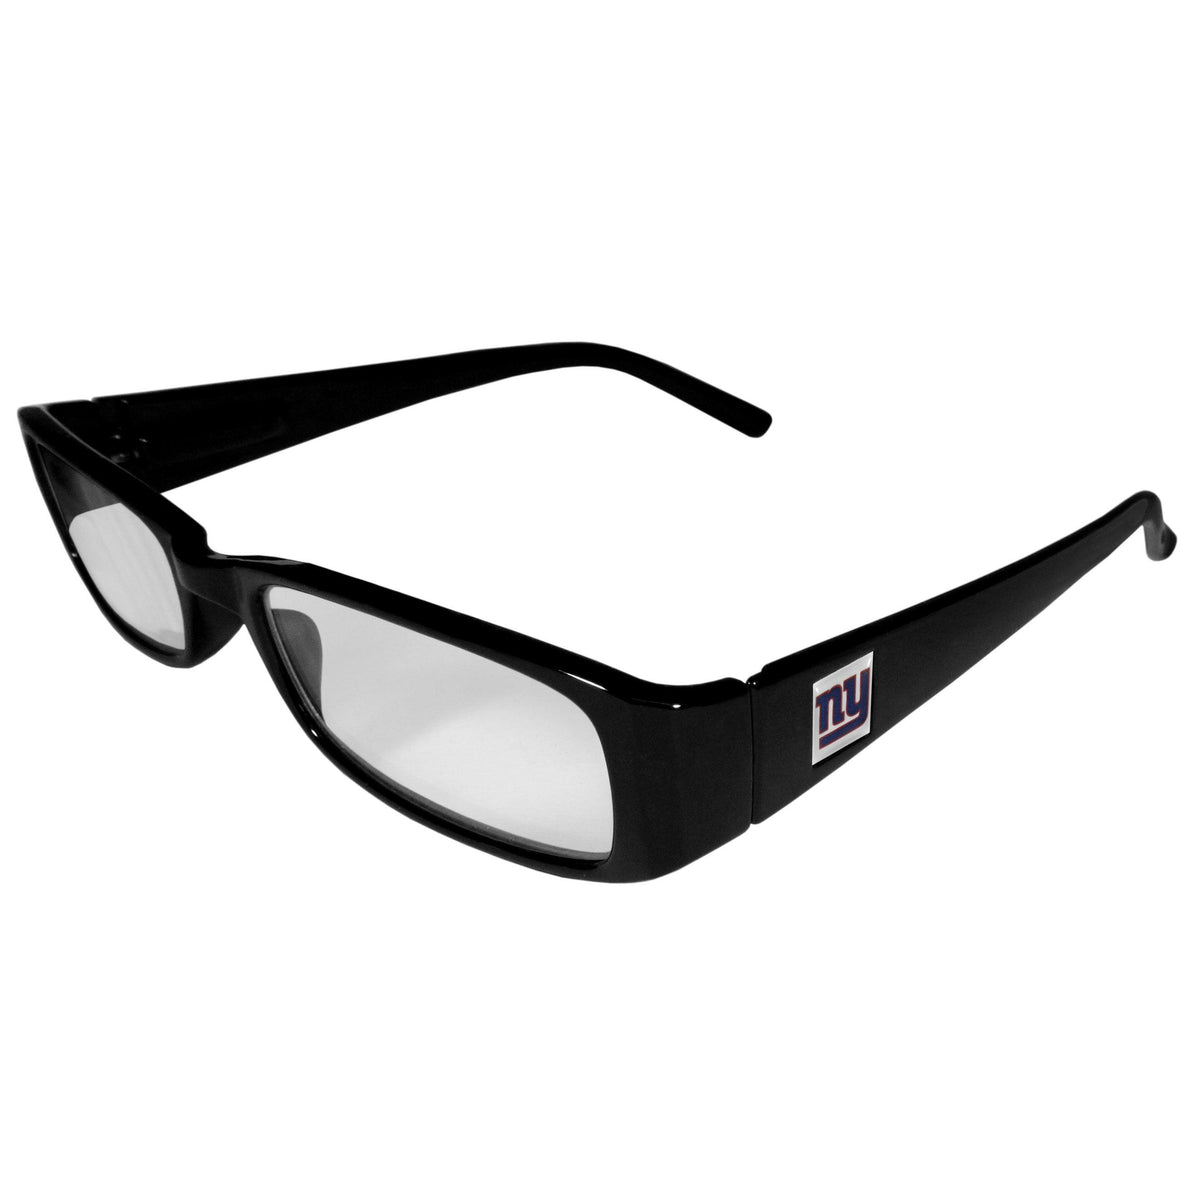 New York Giants Black Reading Glasses +2.50 - Flyclothing LLC